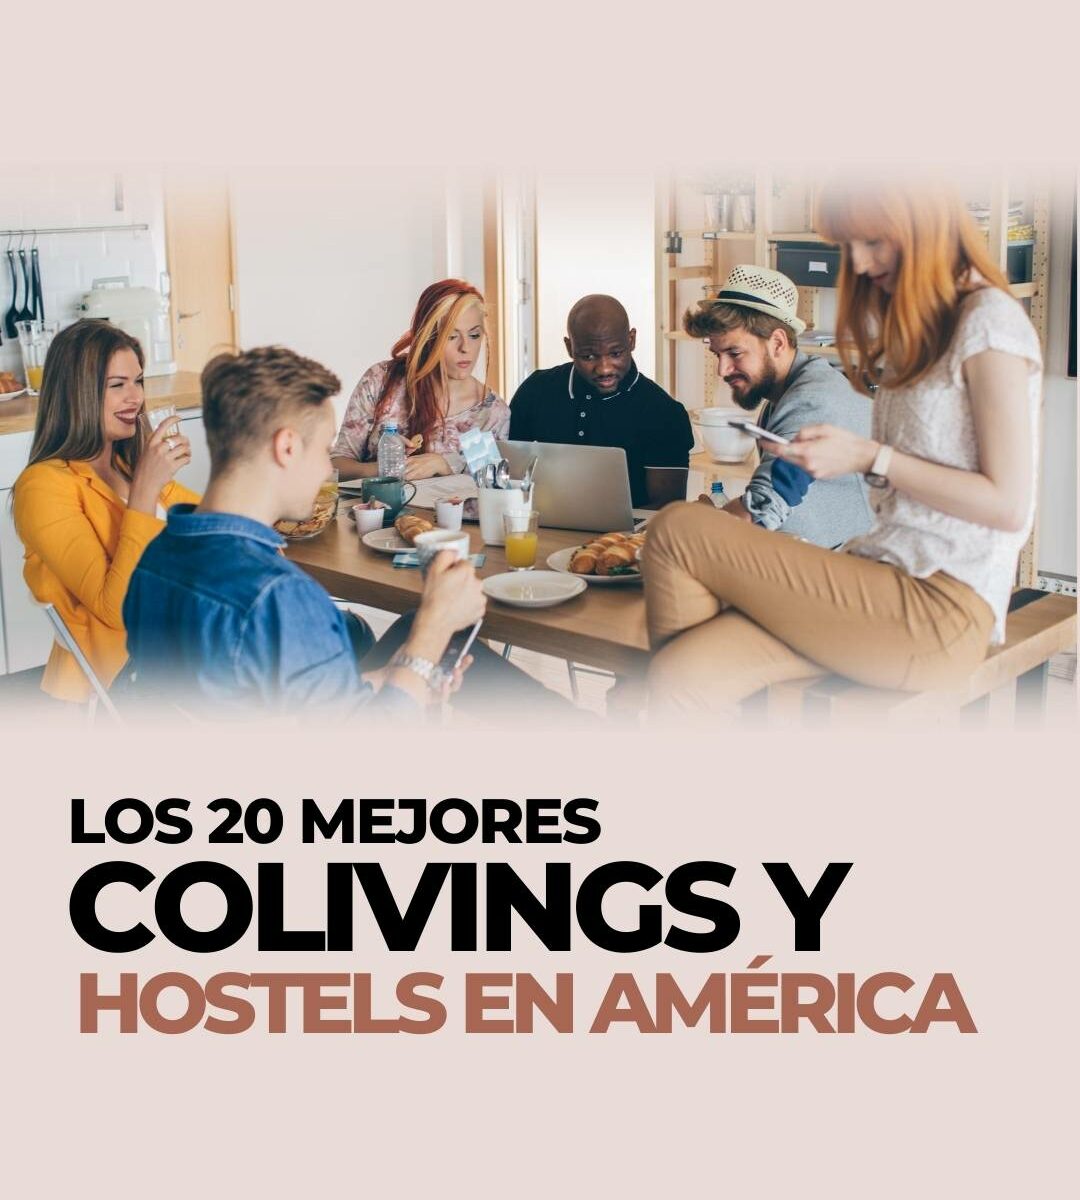 Los mejores hostels en América y colivings